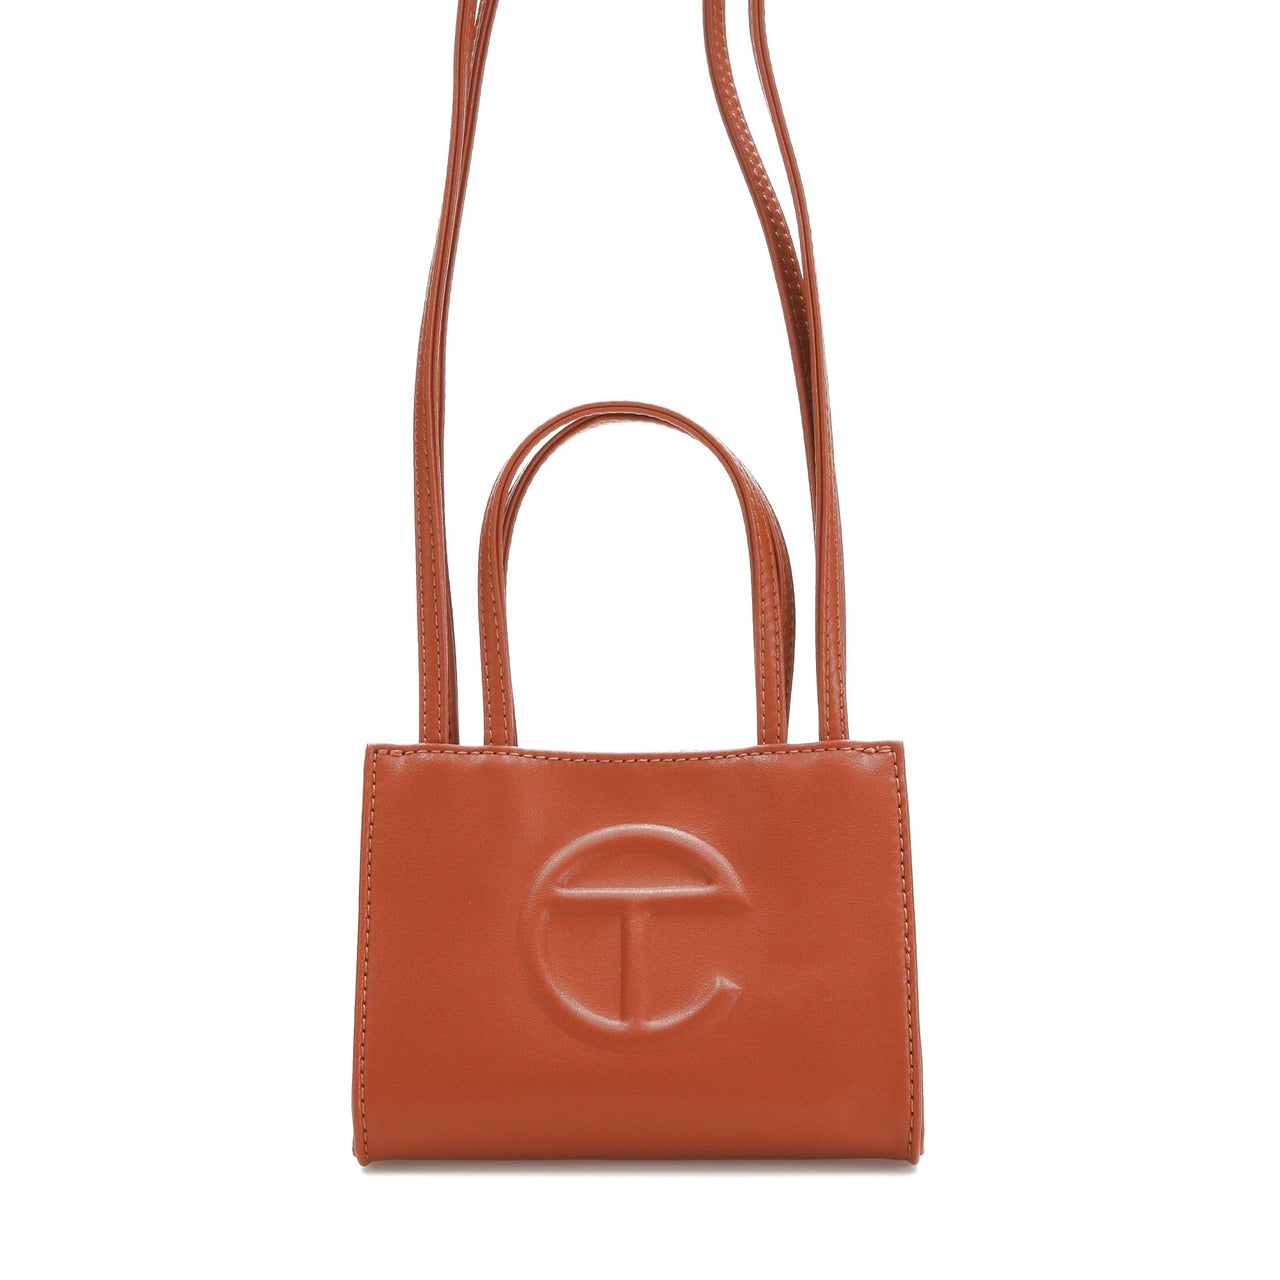 Telfar "Tan" Small Shopping Bag